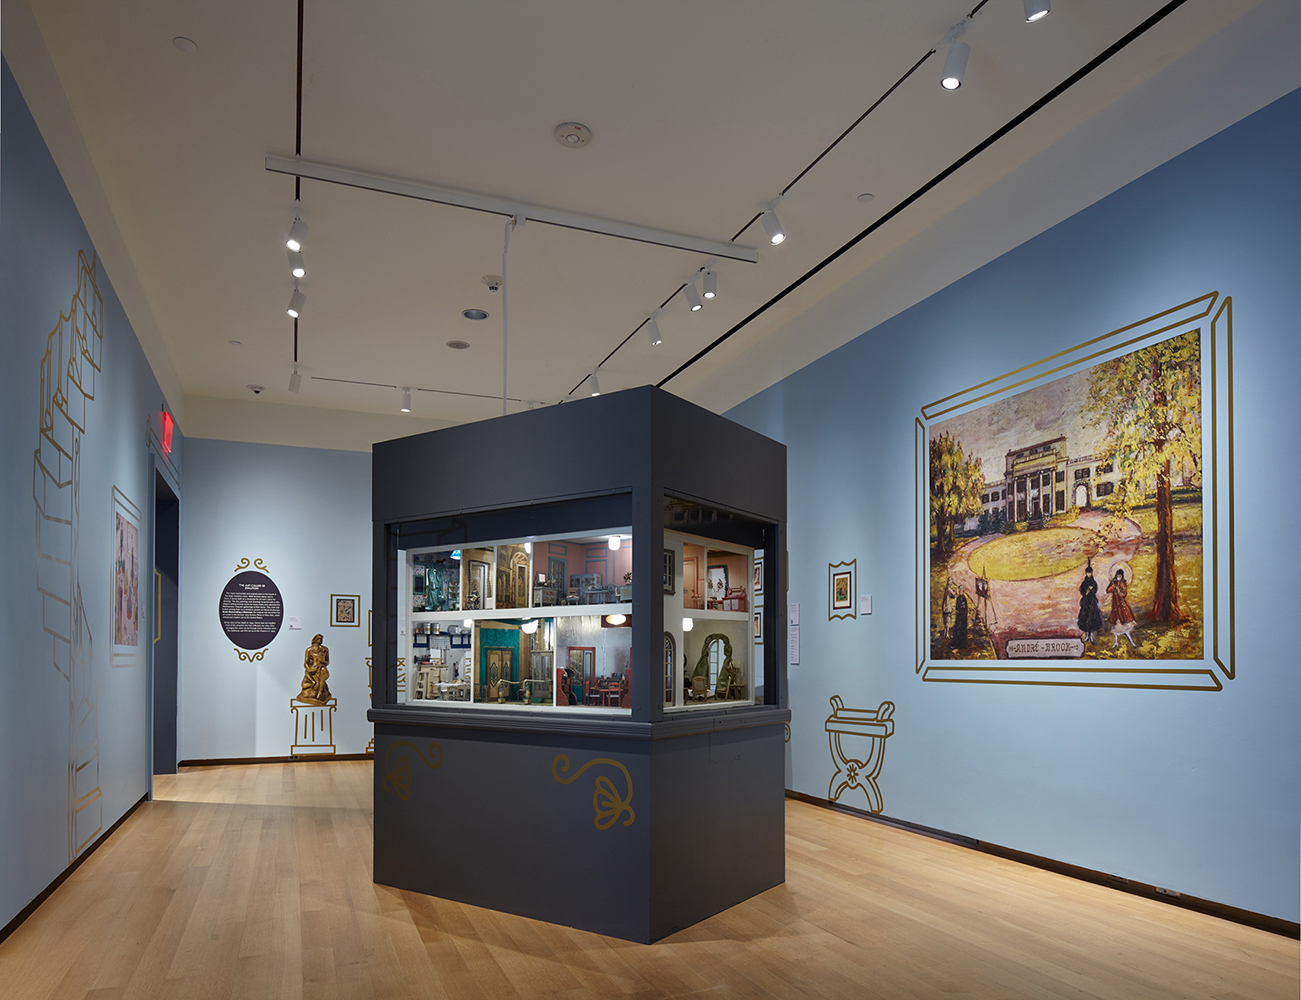 뉴욕시 박물관의 스테트하이머 인형의 집 전시회 이미지